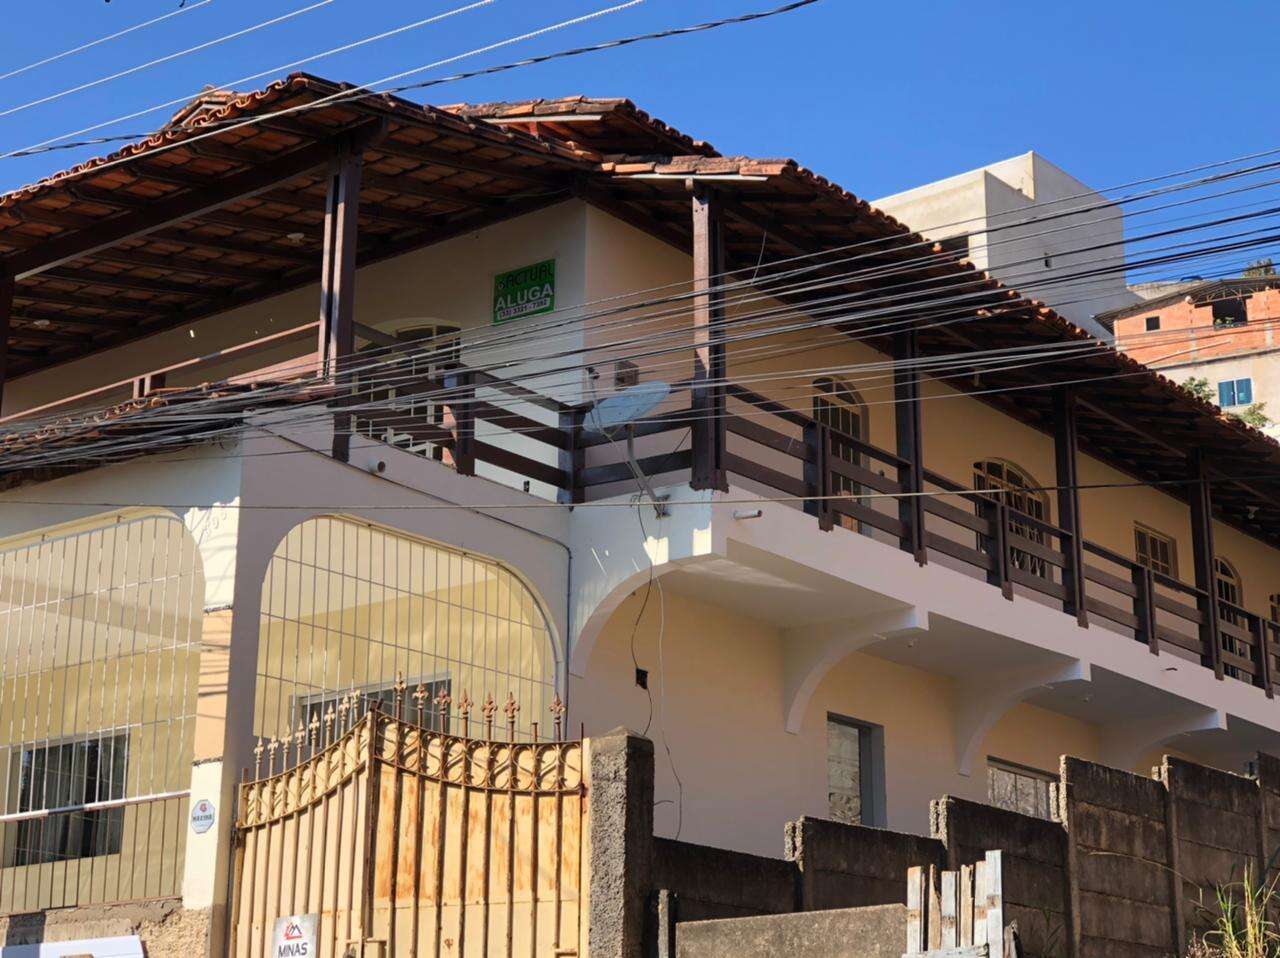 Apartamento 3 quartos à venda no Limoeiro: c9fc6f78-1-whatsapp-image-2021-06-18-at-16.32.44-1.jpeg